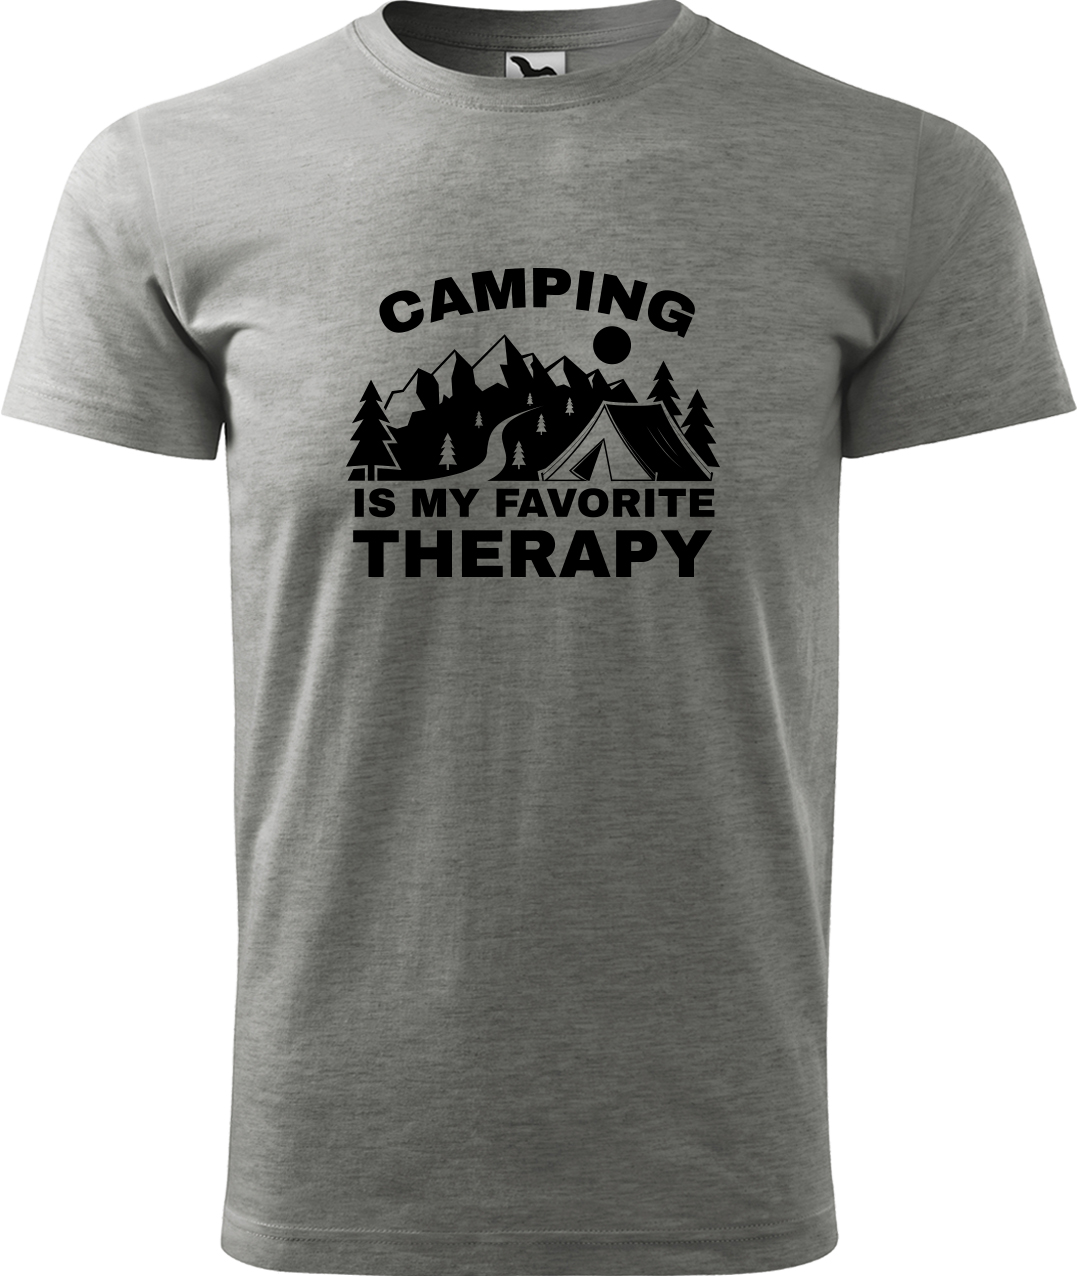 Pánské cestovatelské tričko - Camping is my favorite therapy Velikost: S, Barva: Tmavě šedý melír (12), Střih: pánský